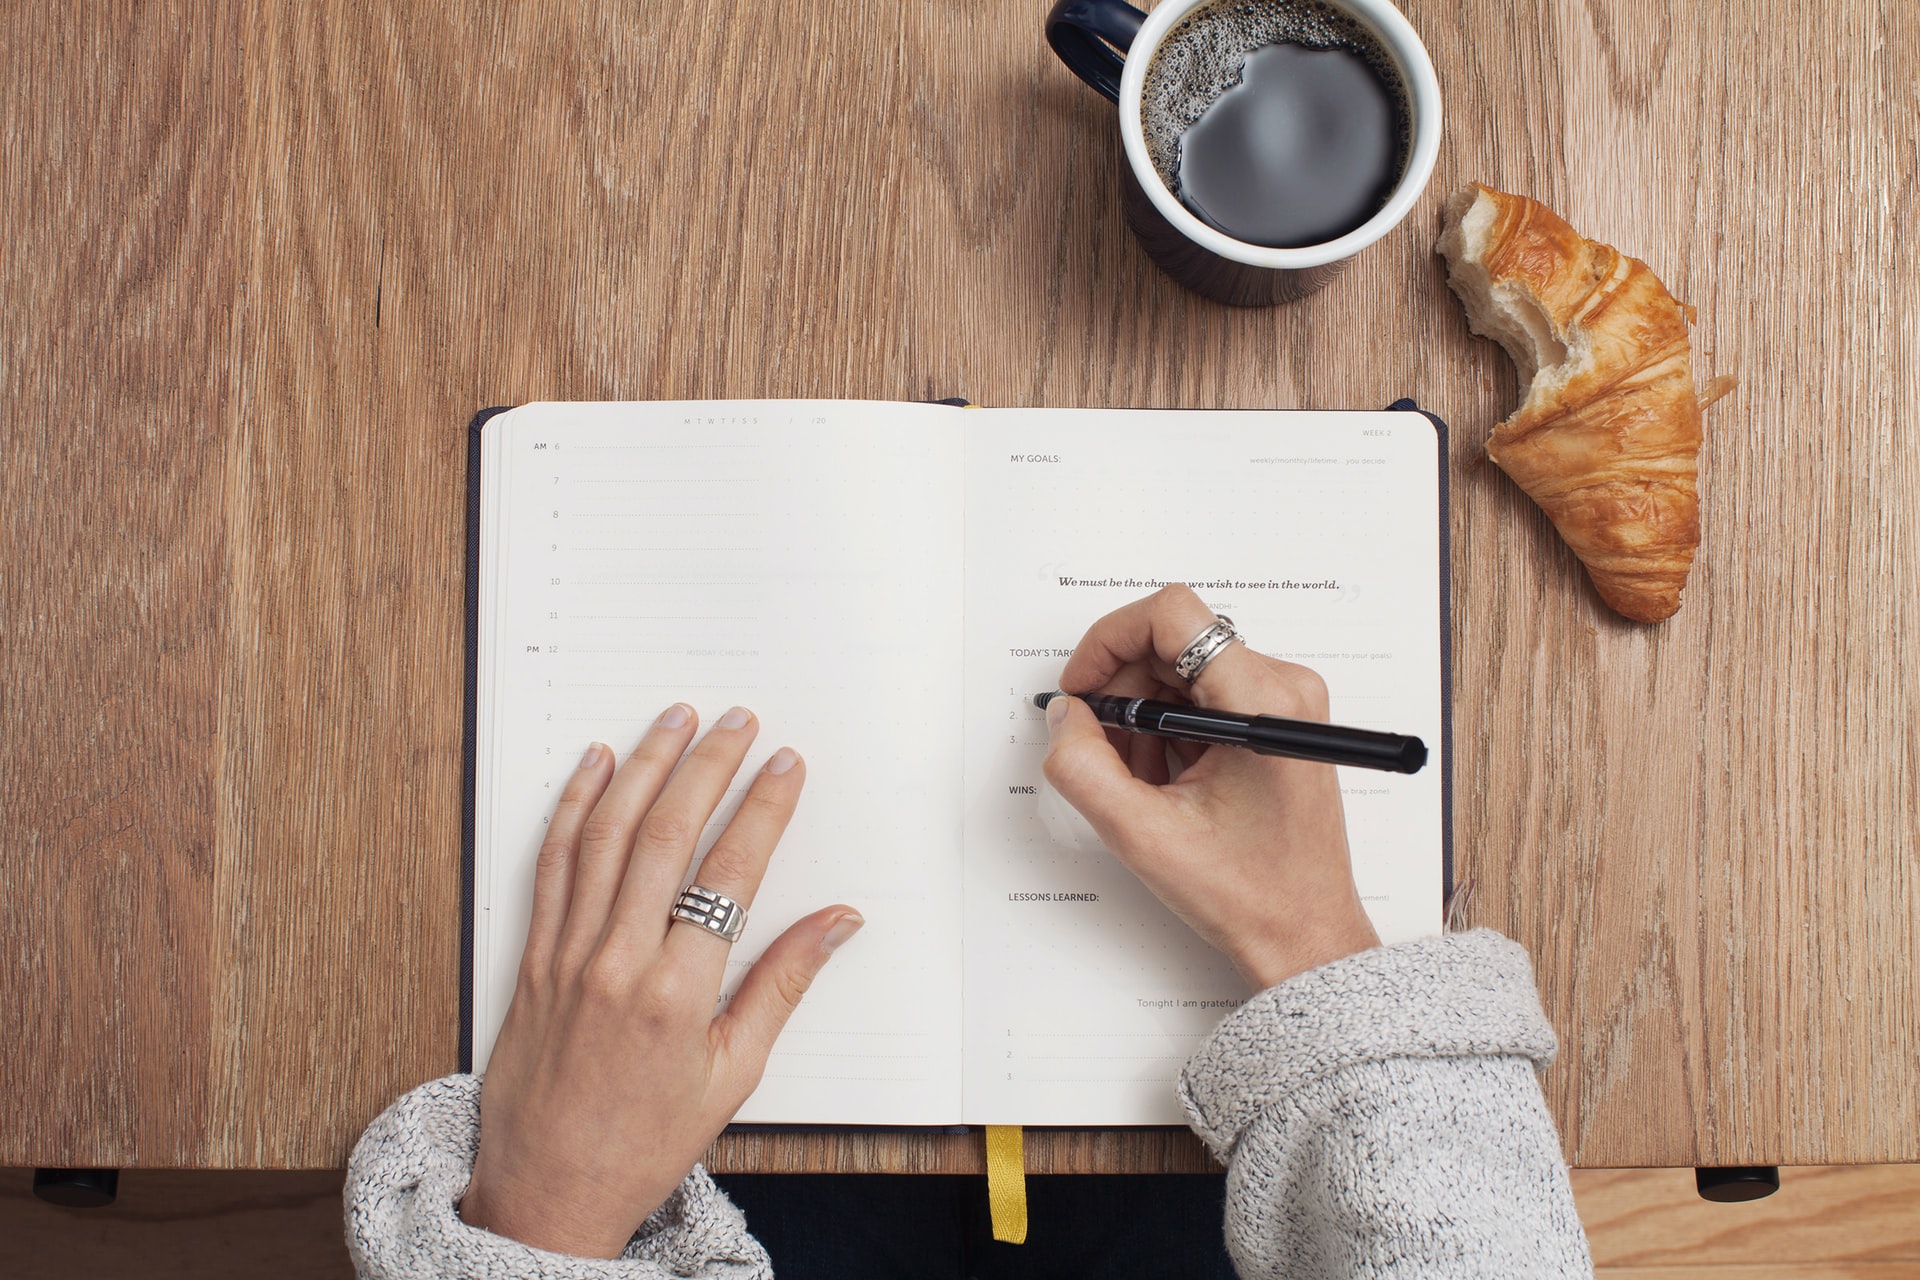 Mulher escrevendo em um caderno, com um café um um croissant sobre a mesa